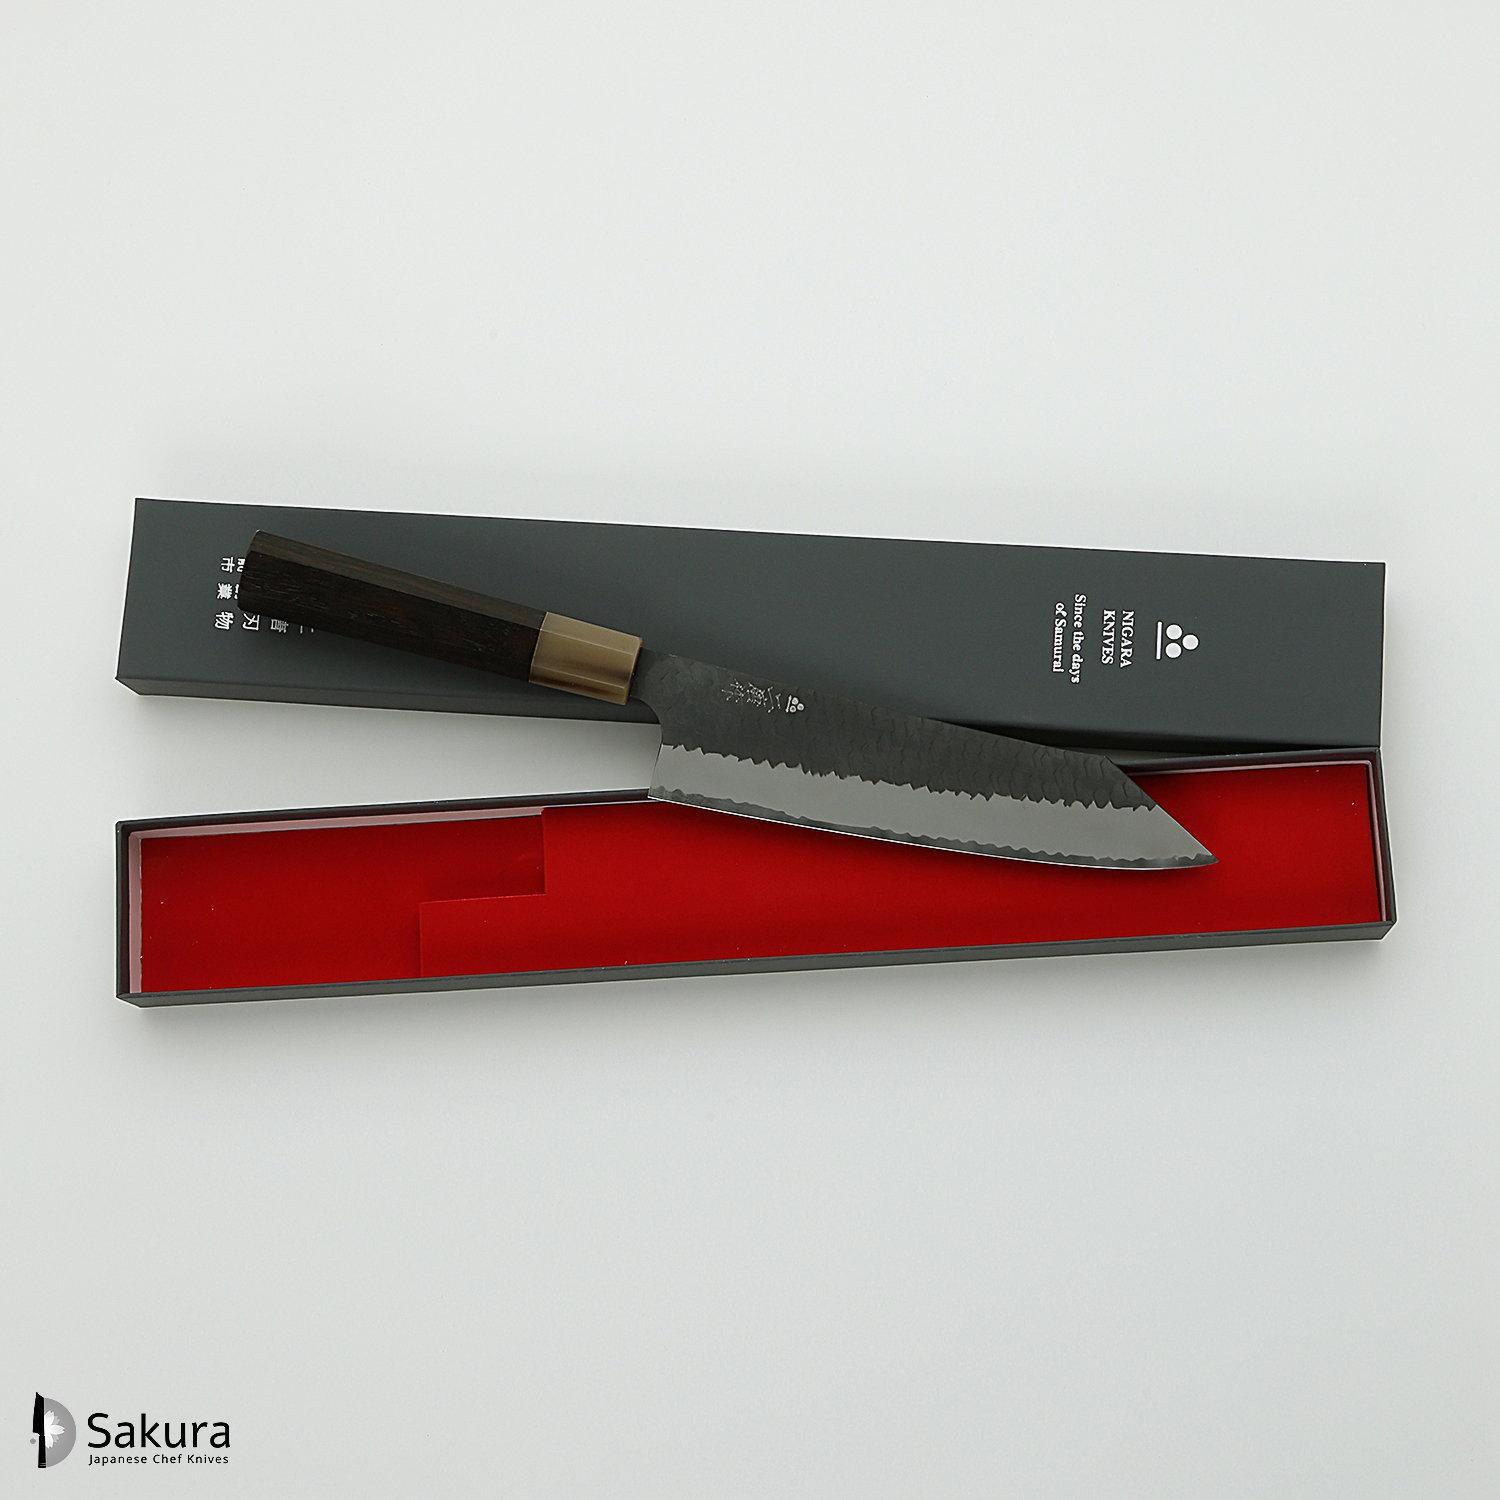 סכין שף רב-תכליתית קִּירִיצוּקֶה גִּיוּטוֹ 210מ״מ מחושלת בעבודת יד 3 שכבות: פלדת פחמן יפנית מתקדמת מסוג R2/SG2 עטופה פלדת אל-חלד גימור קורואיצ׳י שחור עם ריקוע פטיש ניגארה יפן